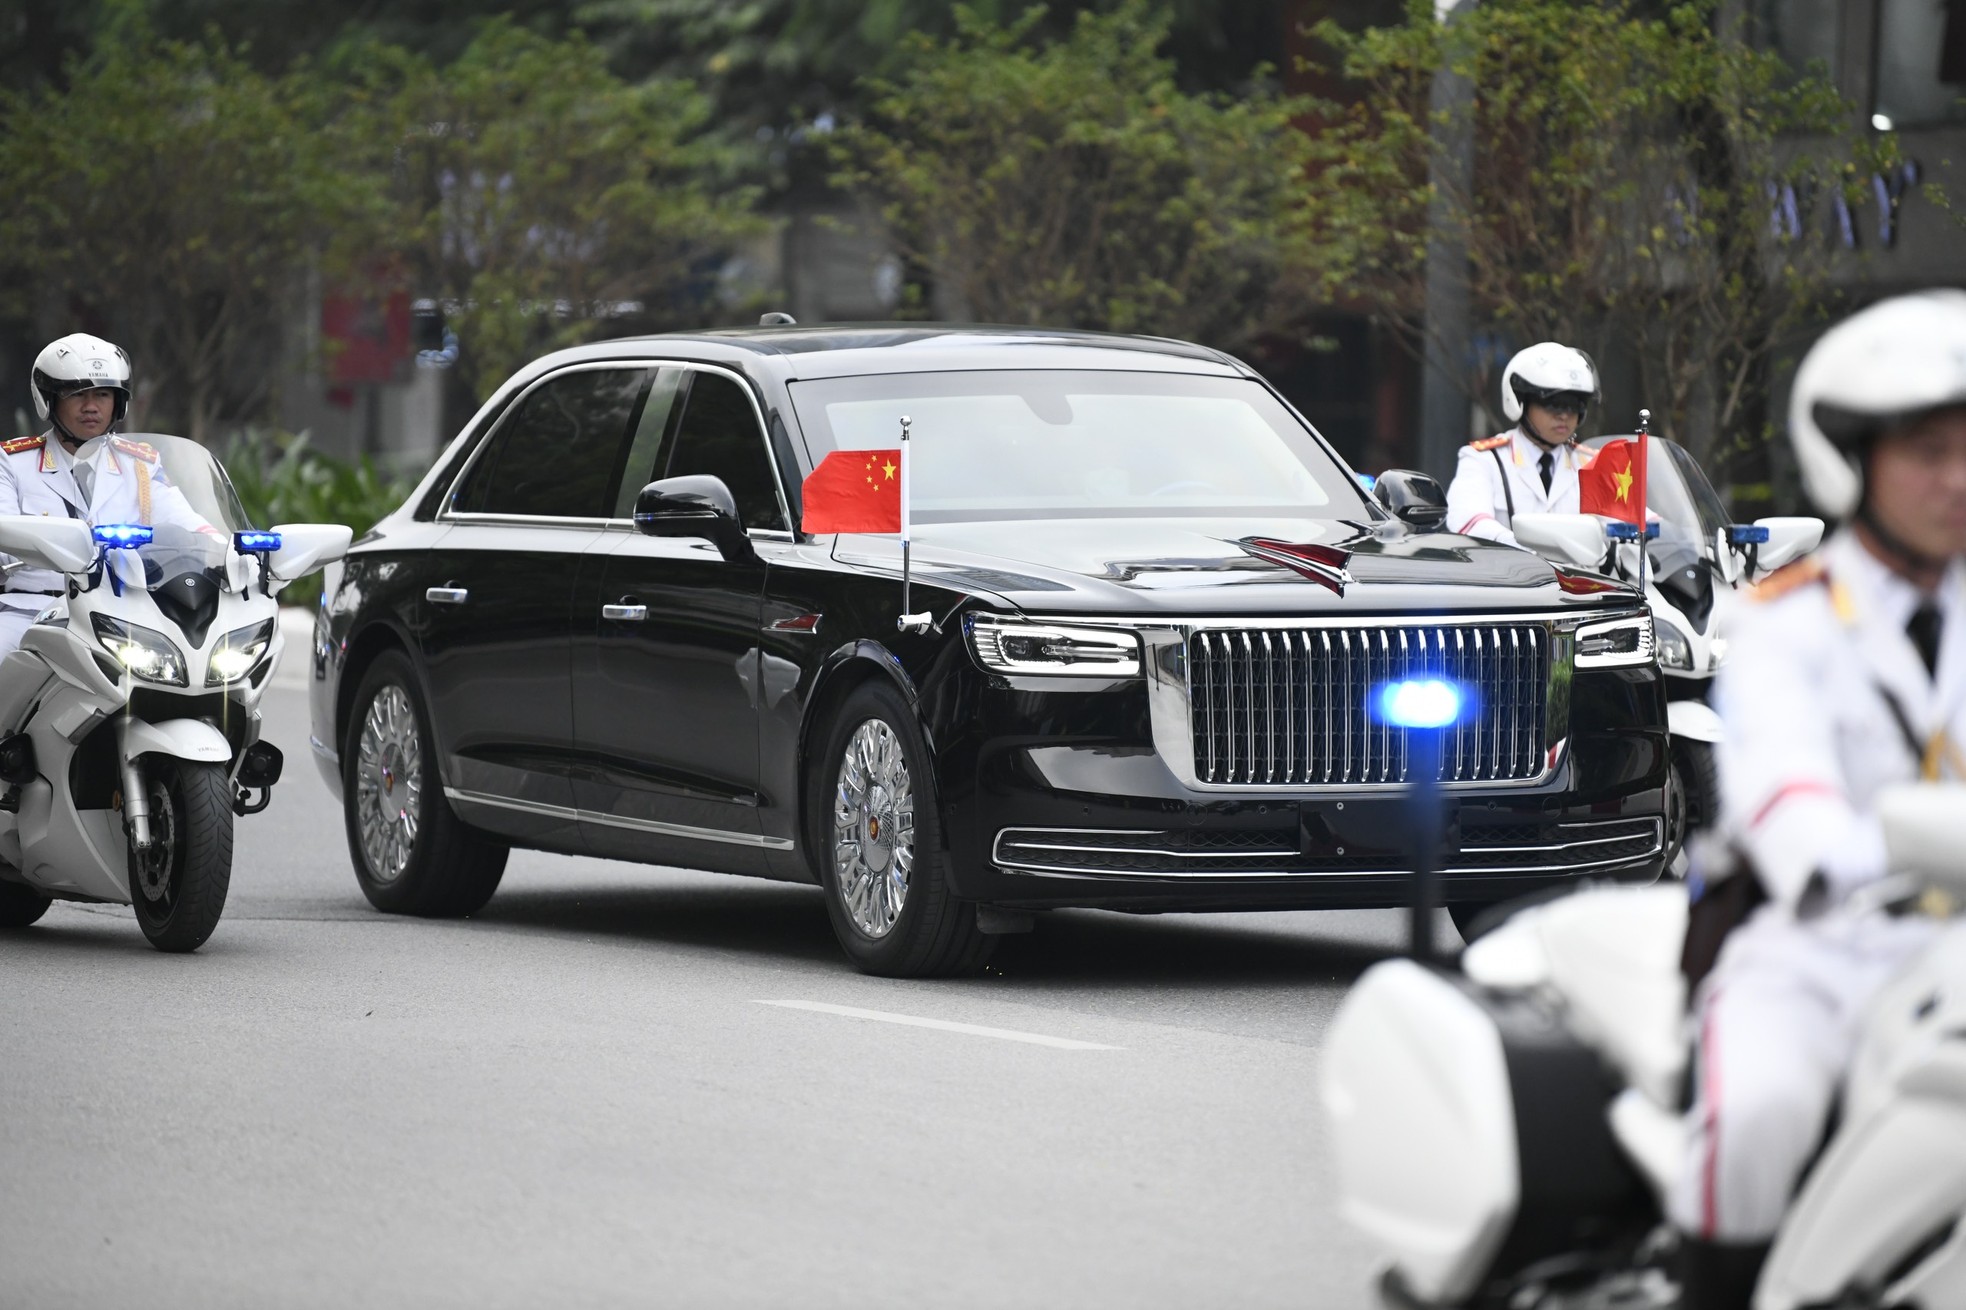 Đoàn xe hộ tống Tổng Bí thư, Chủ tịch Trung Quốc Tập Cận Bình trên đường phố Hà Nội sáng nay ảnh 1